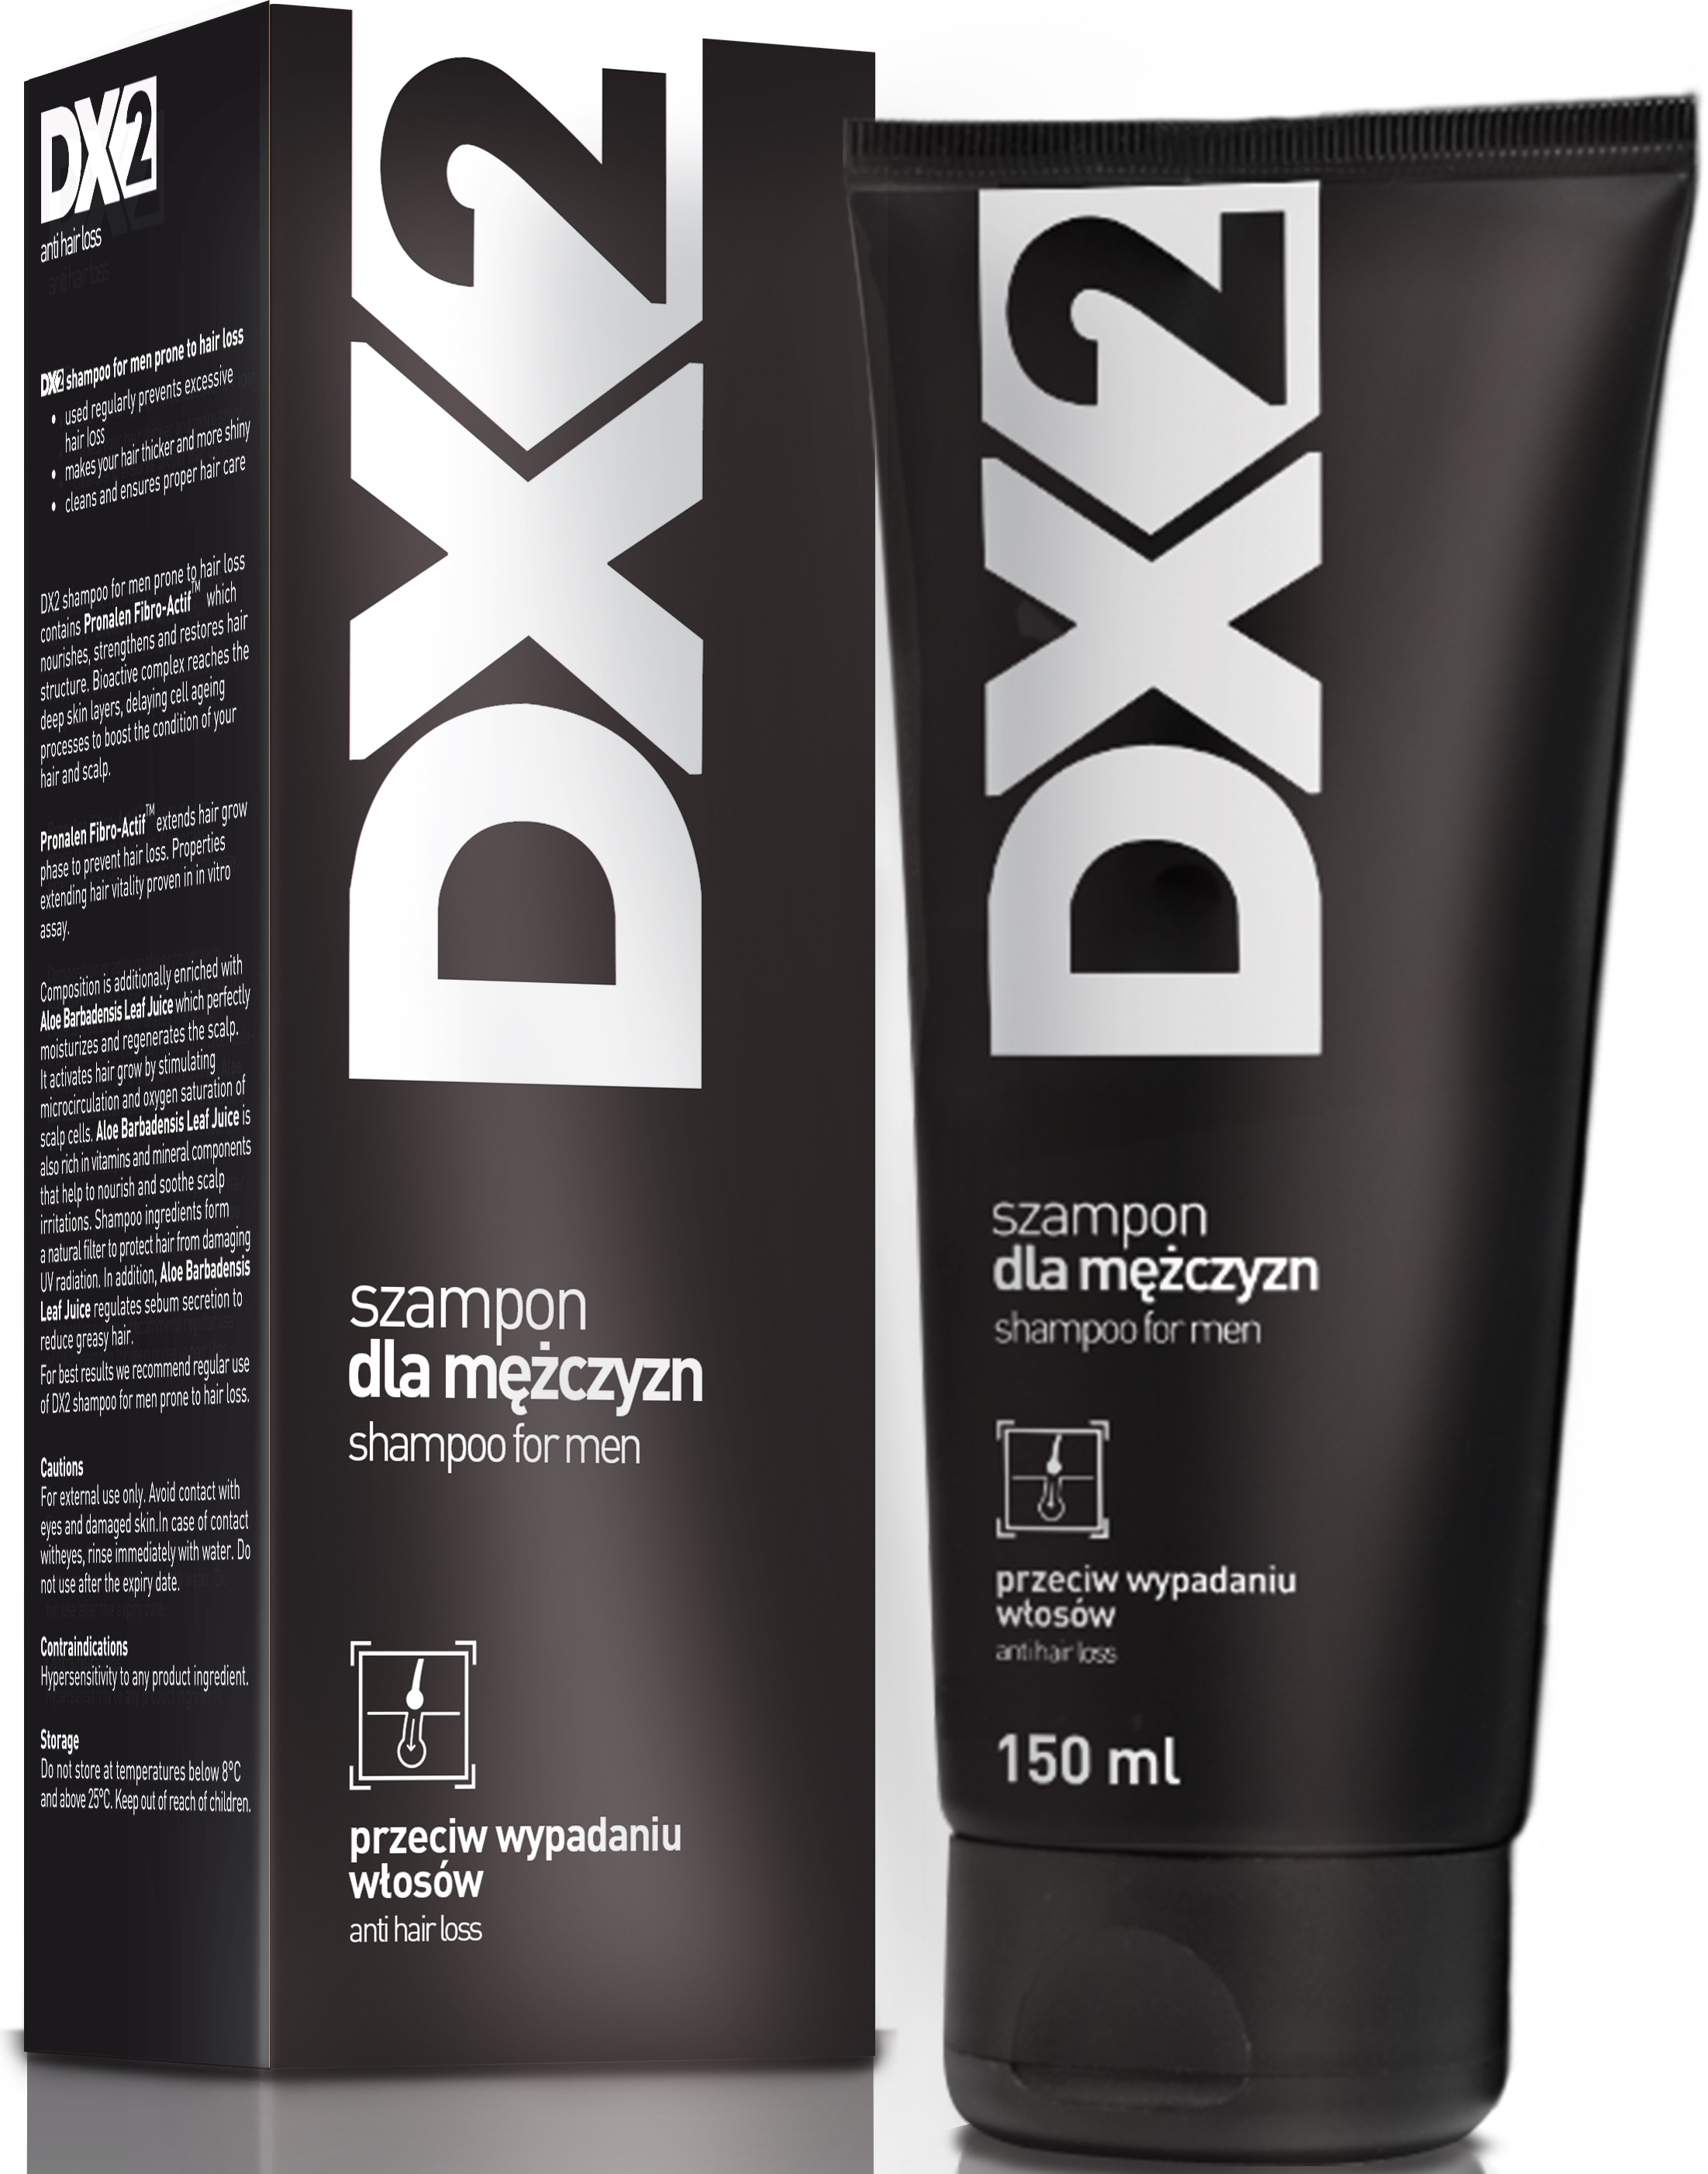 szampon dx 2 czy są badania naukowe na temat skuteczności